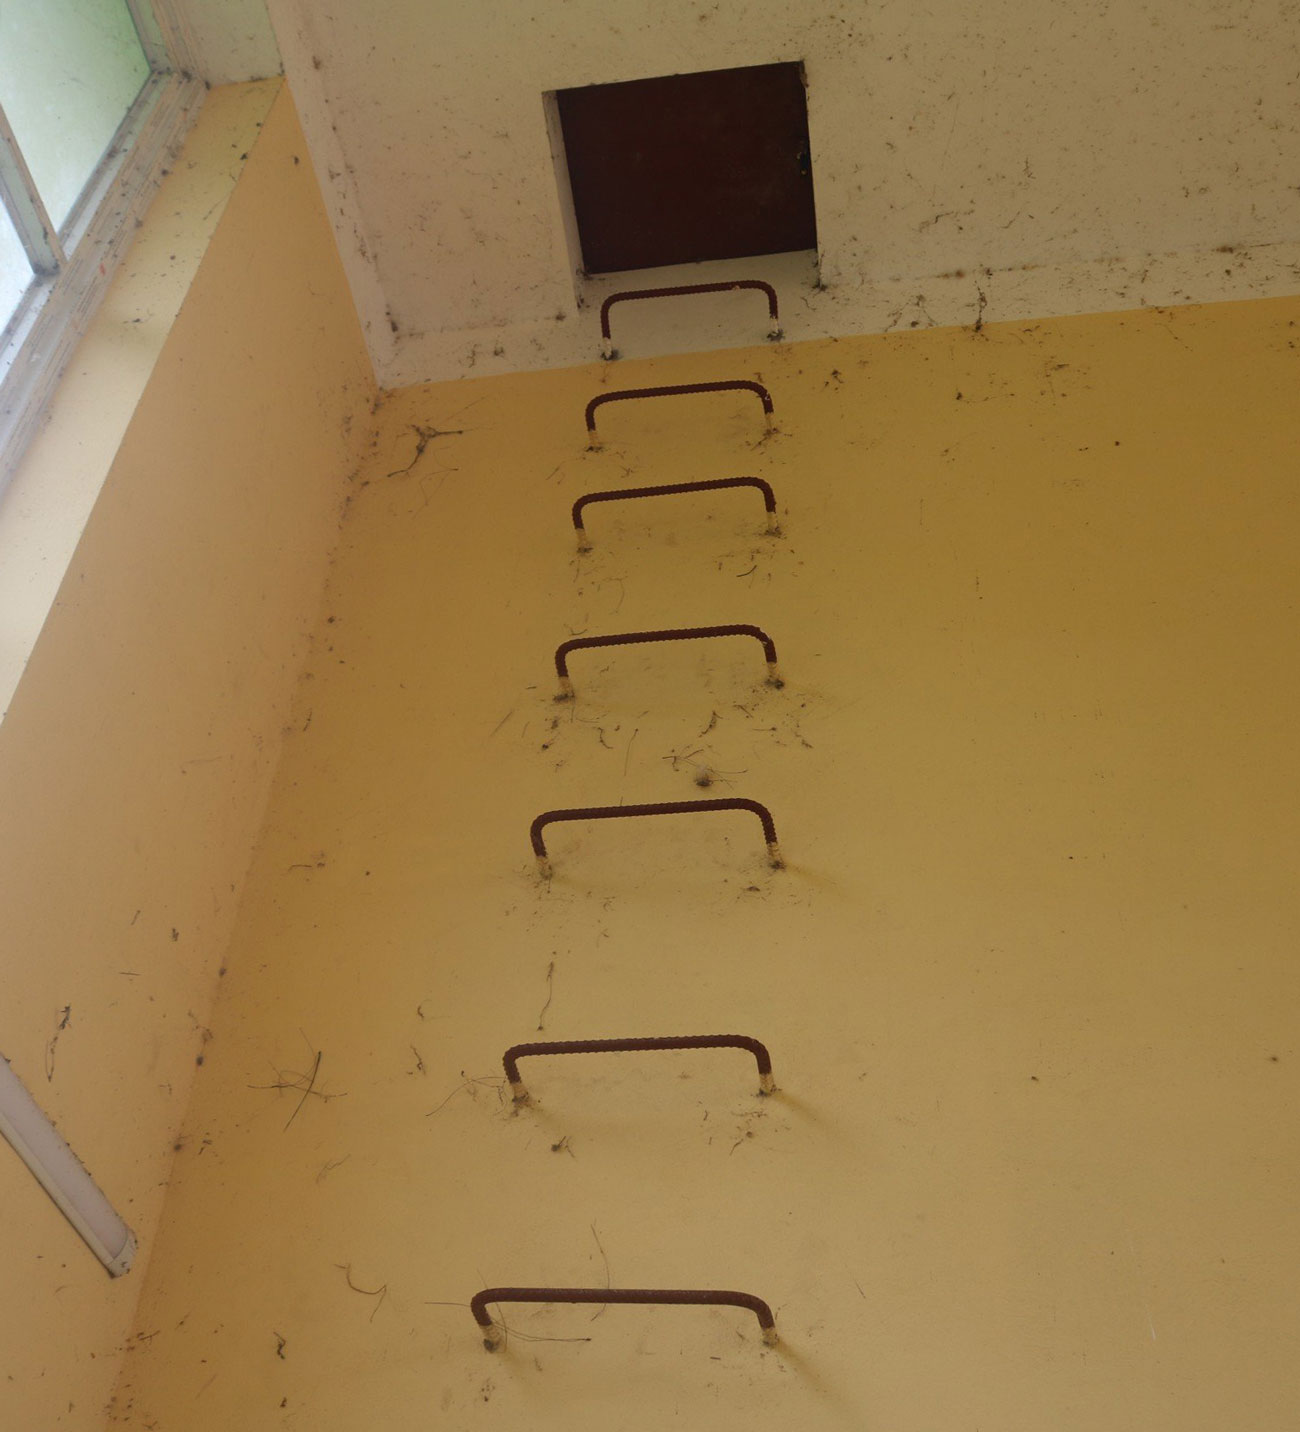  Sau khi leo thang sắt dẫn lên tầng thượng của nhà lớp học 3 tầng, không may nắp đậy lối xuống bị đóng và không thể mở theo chiều ngược lại nên cả 2 cháu bị mắc kẹt tại sân thượng.